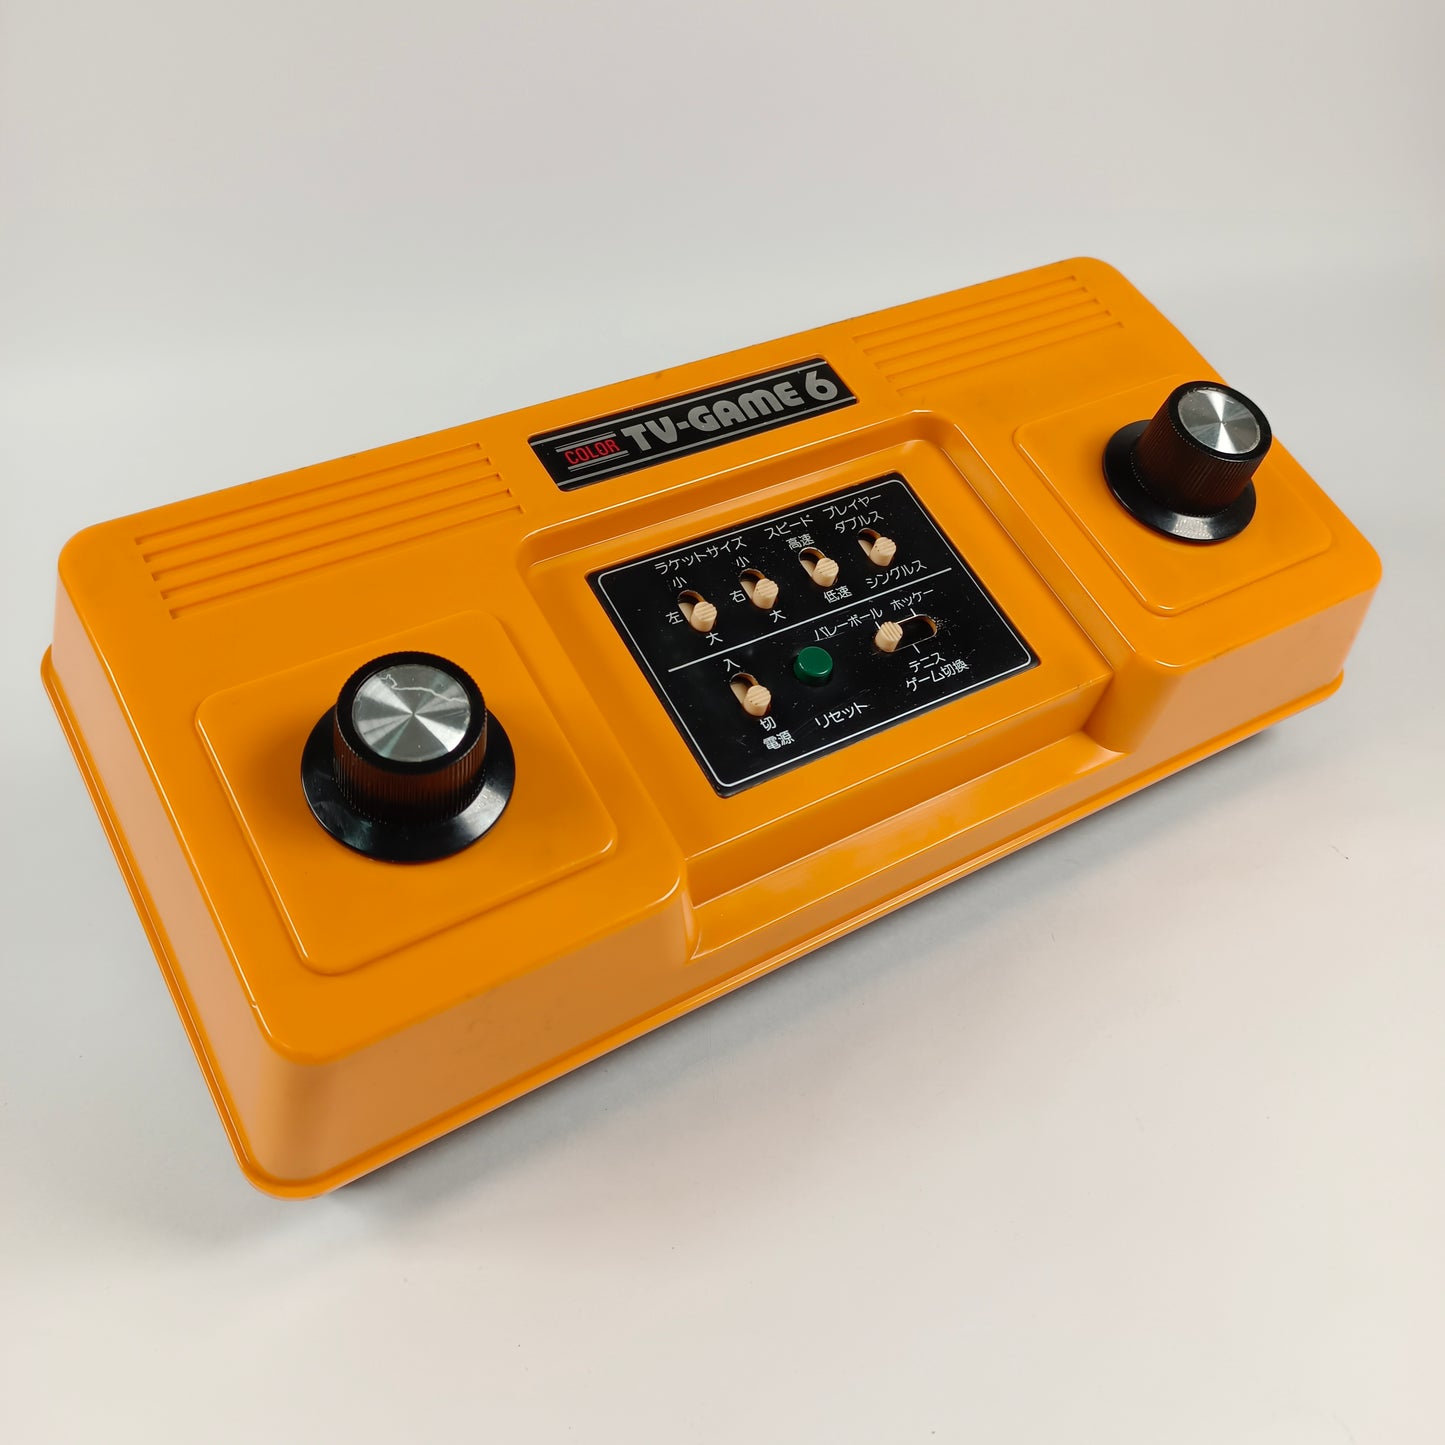 Color TV-Game 6 modèle CTG-6V.